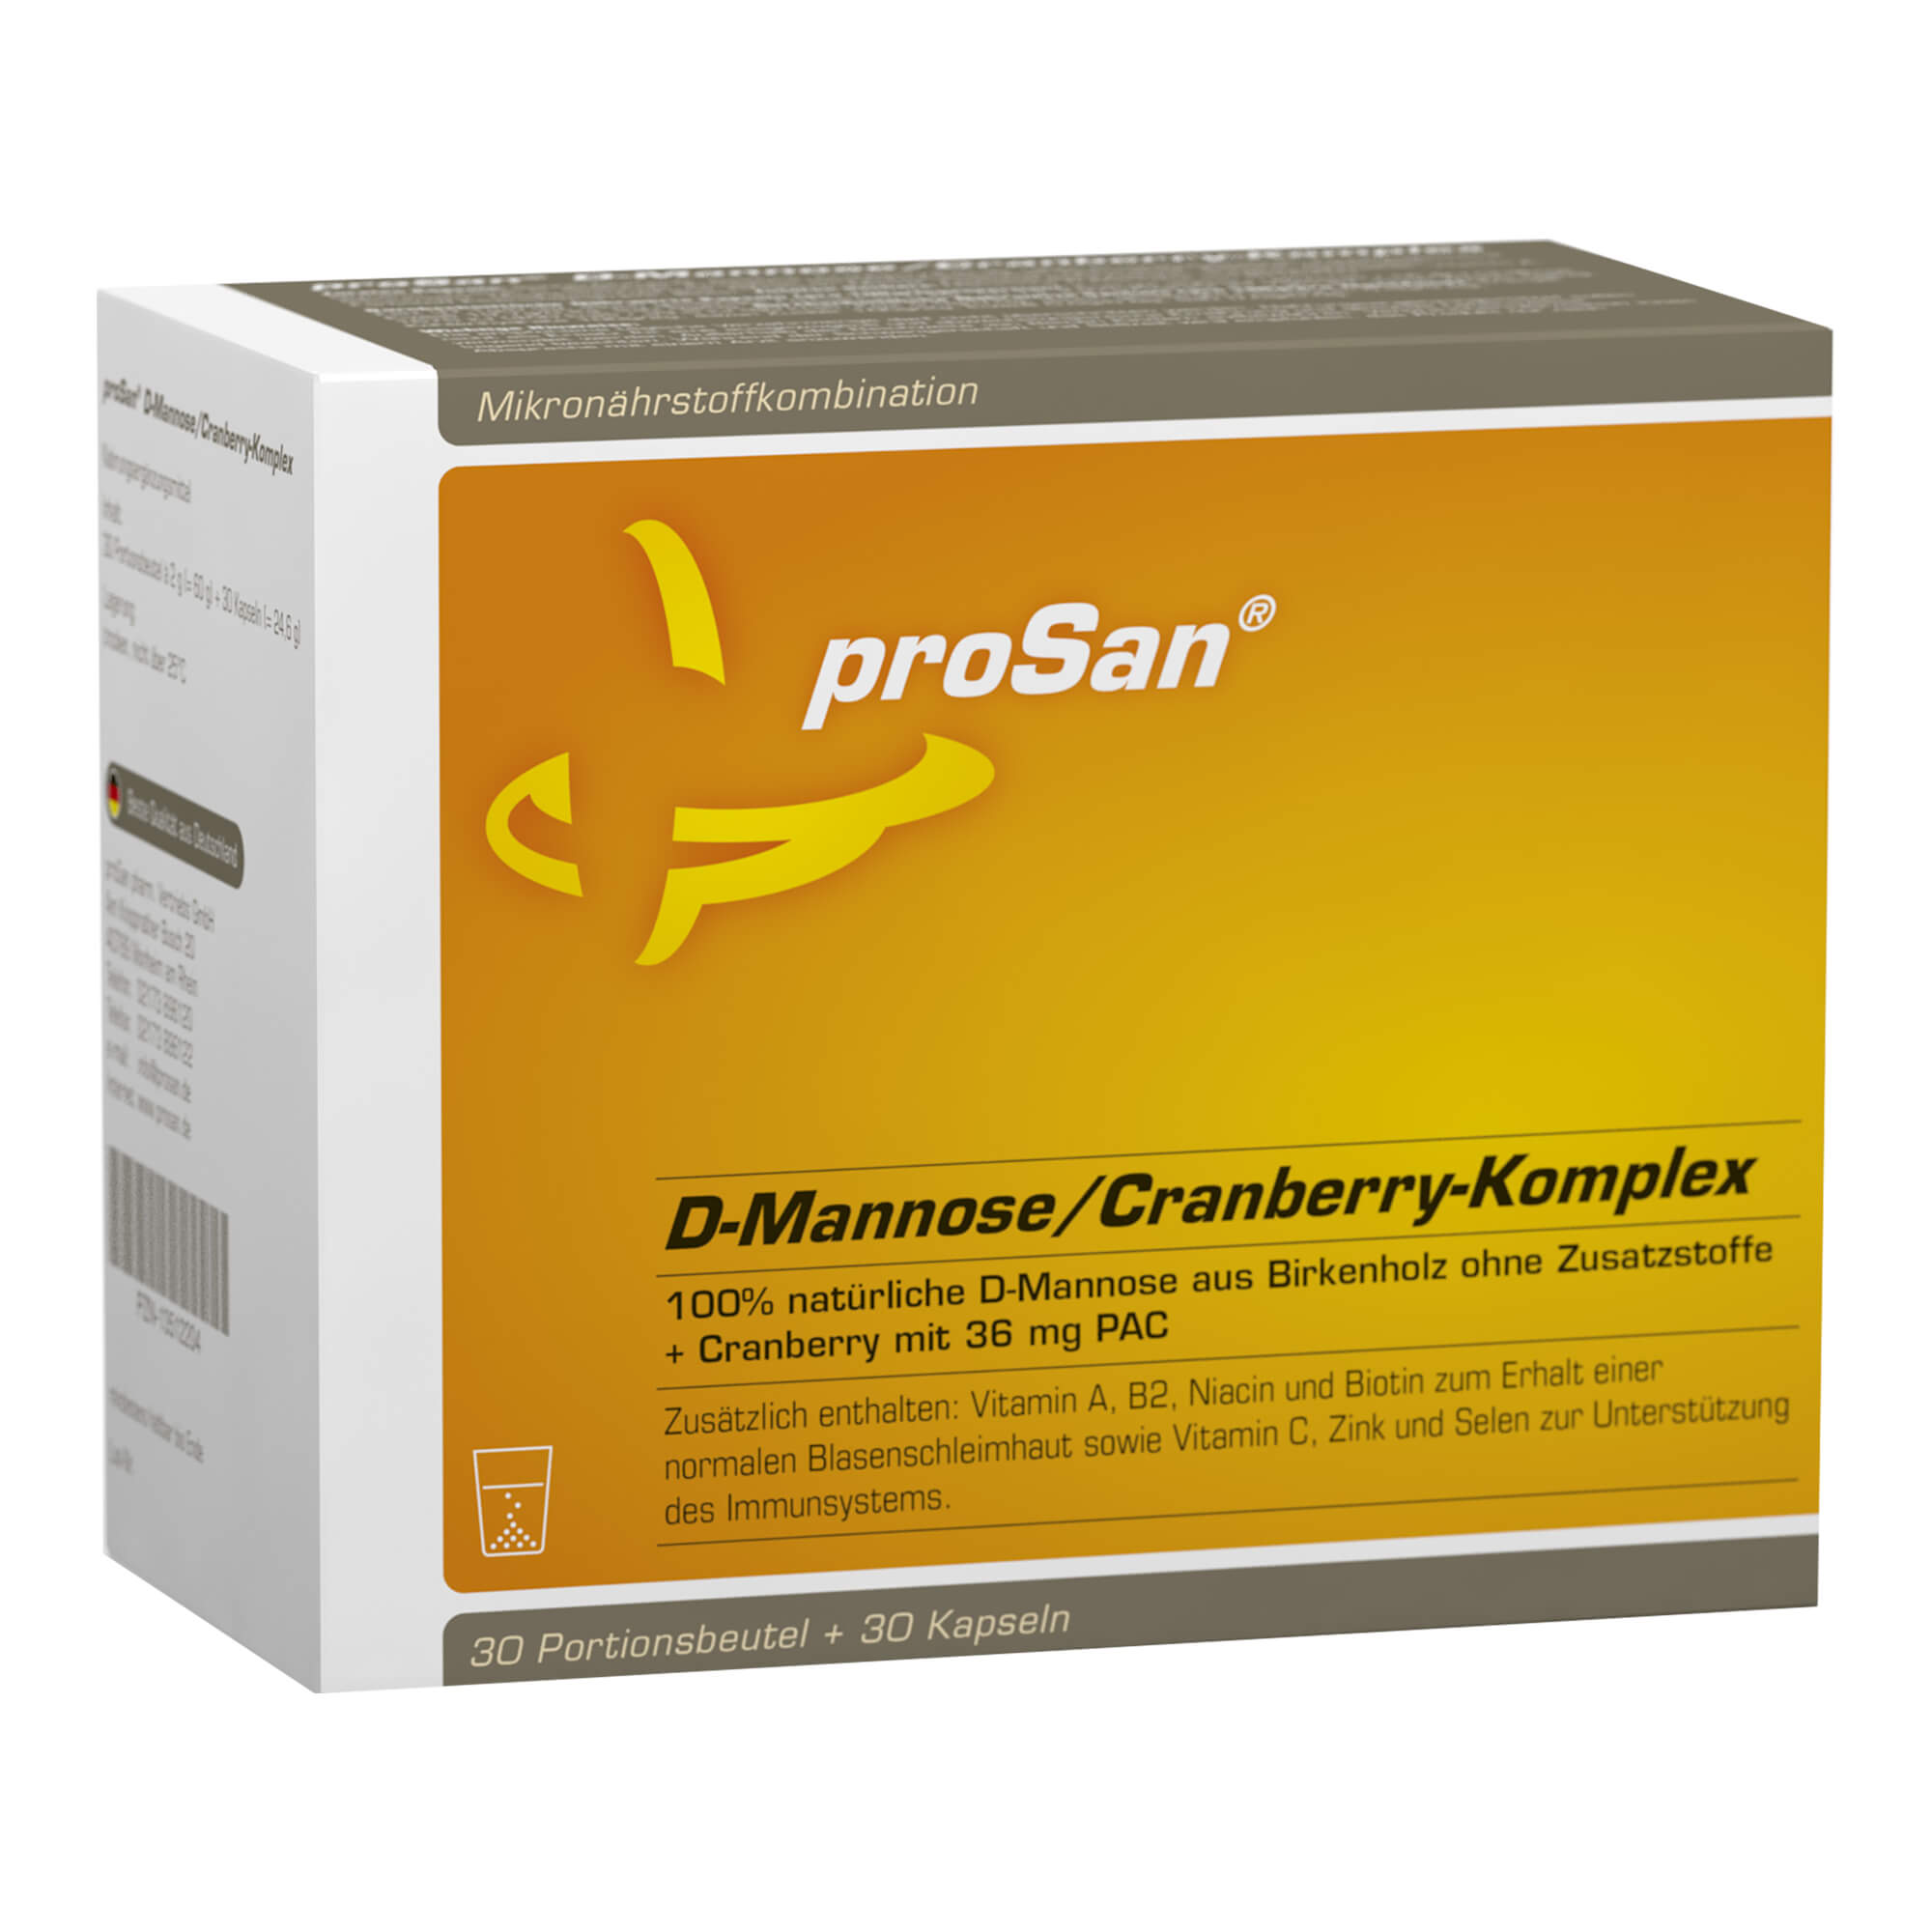 100% natürliche D-Mannose aus Birkenholz ohne Zusatzstoffe + Cranberry mit 36 mg PAC.